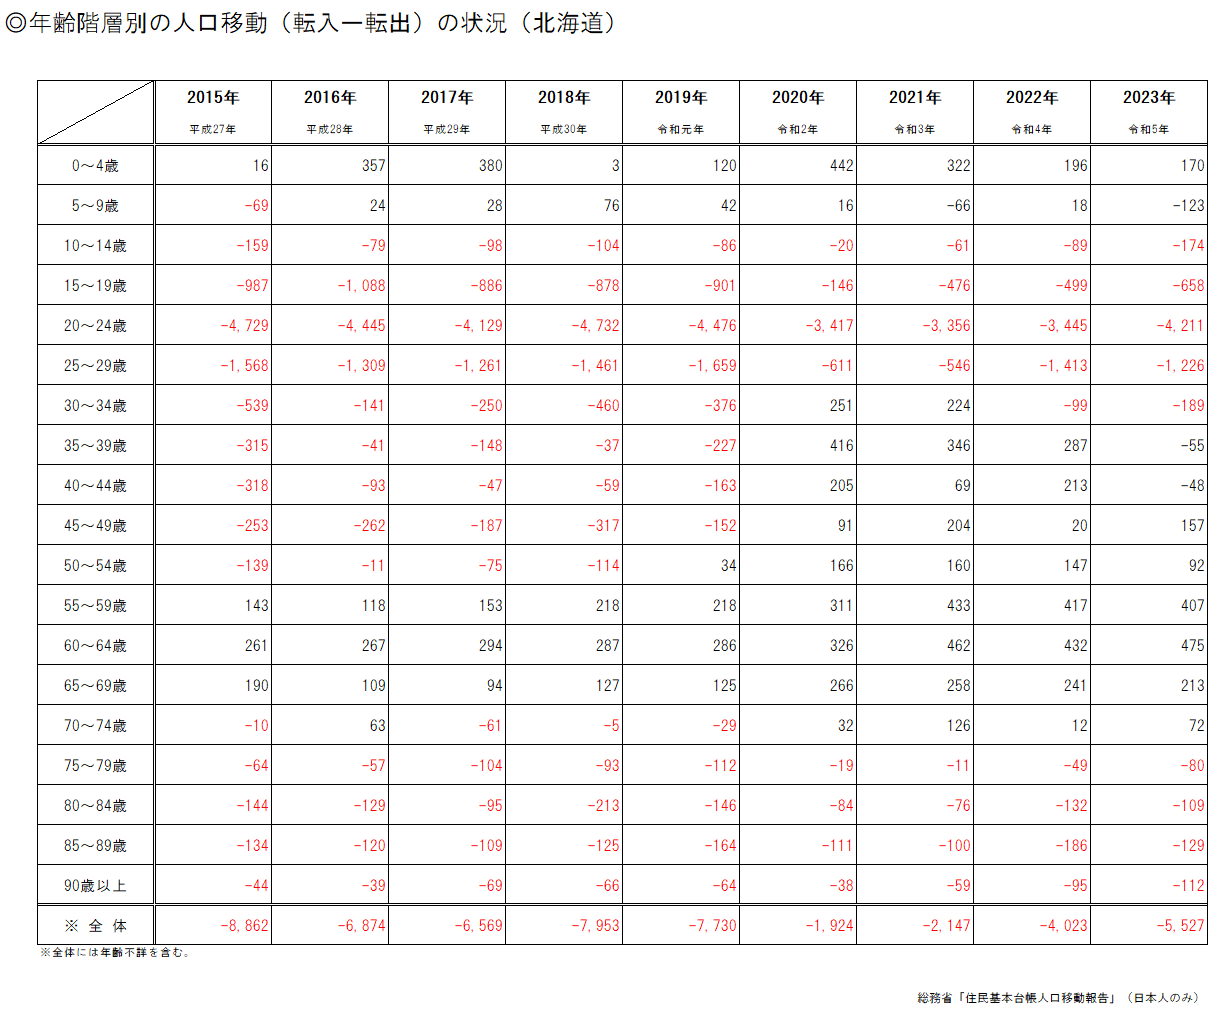 年齢階層別の人口移動の状況(北海道)(表).png